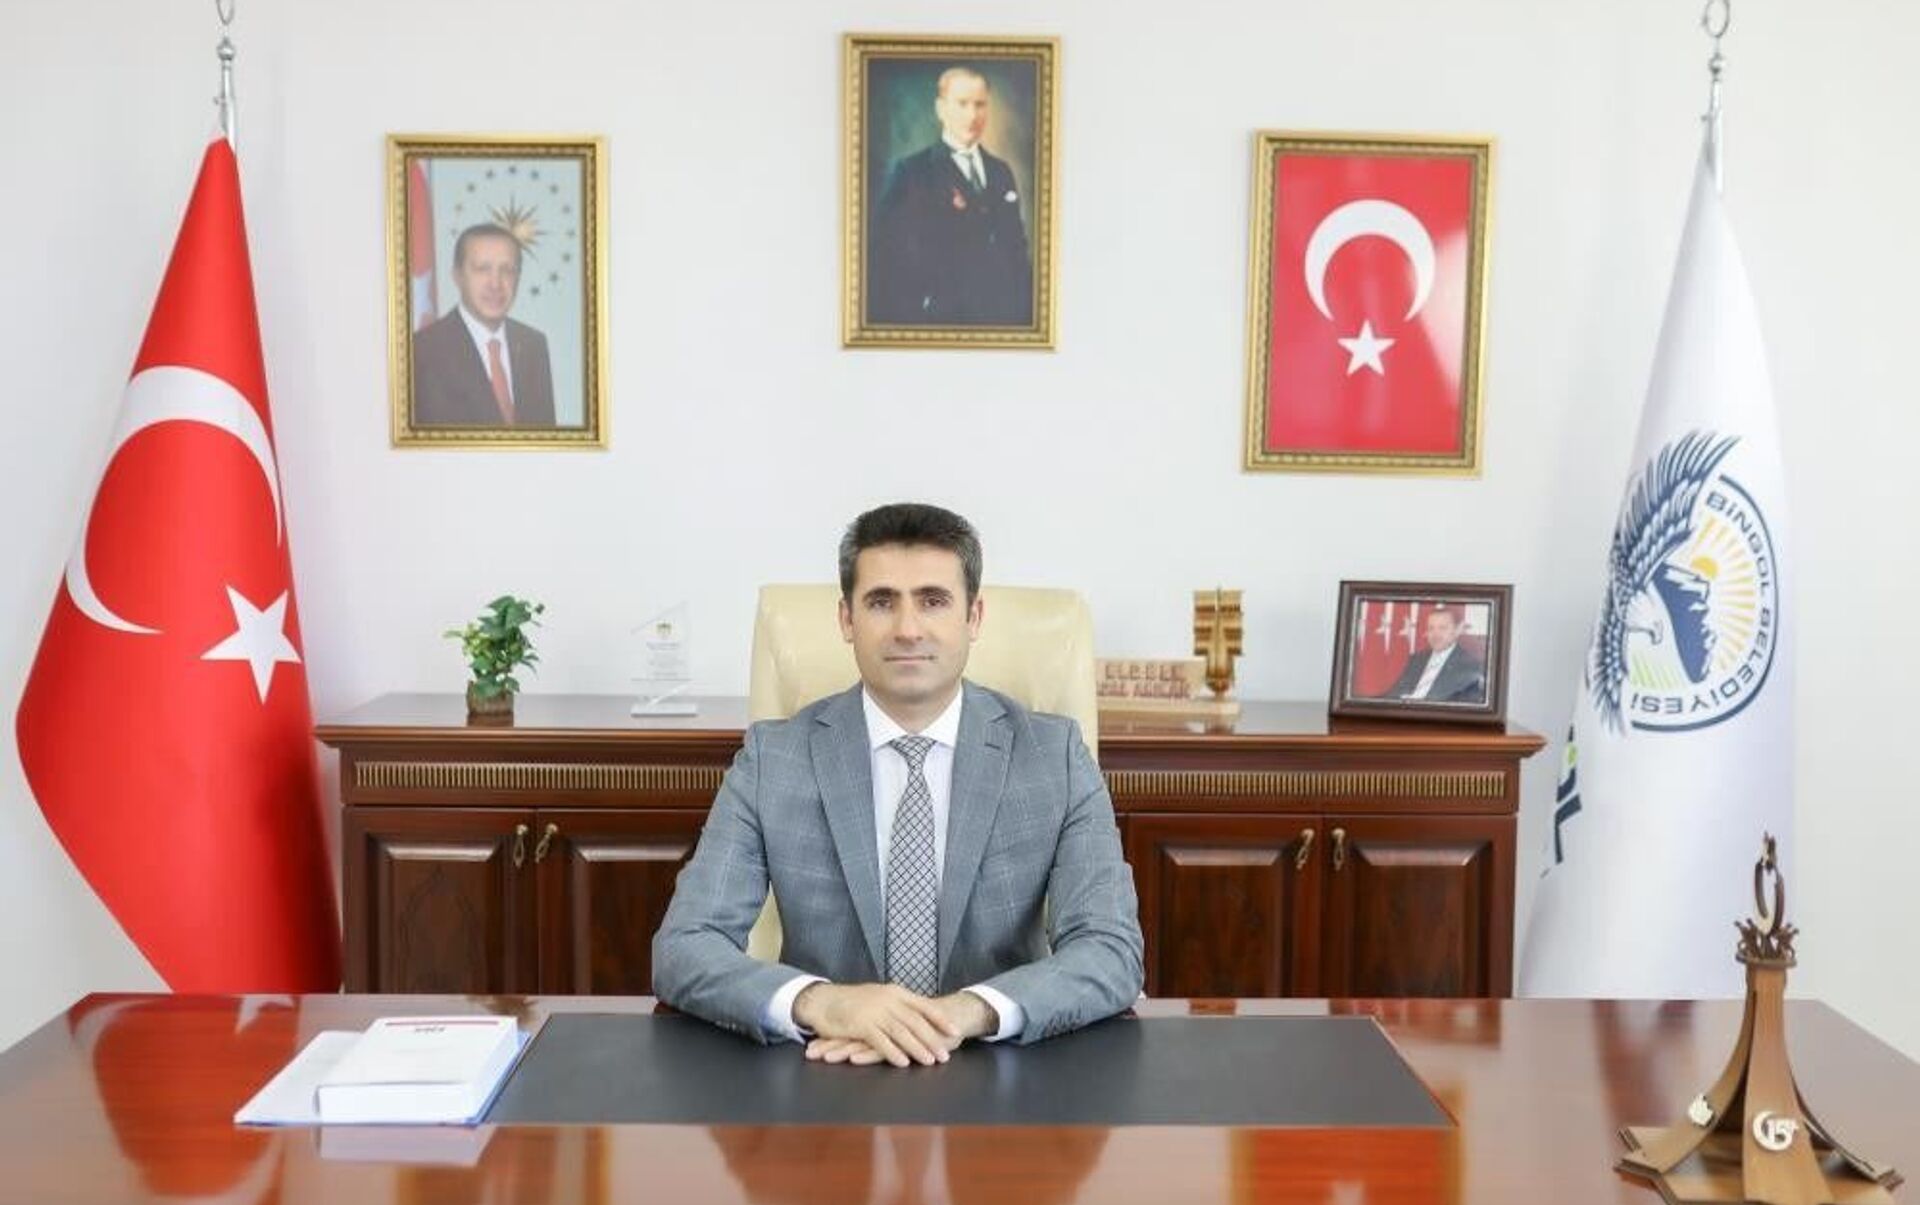 Bingöl Belediye Başkanı Erdal Arıkan, koronavirüse yakalandı - 01.08.2021,  Sputnik Türkiye